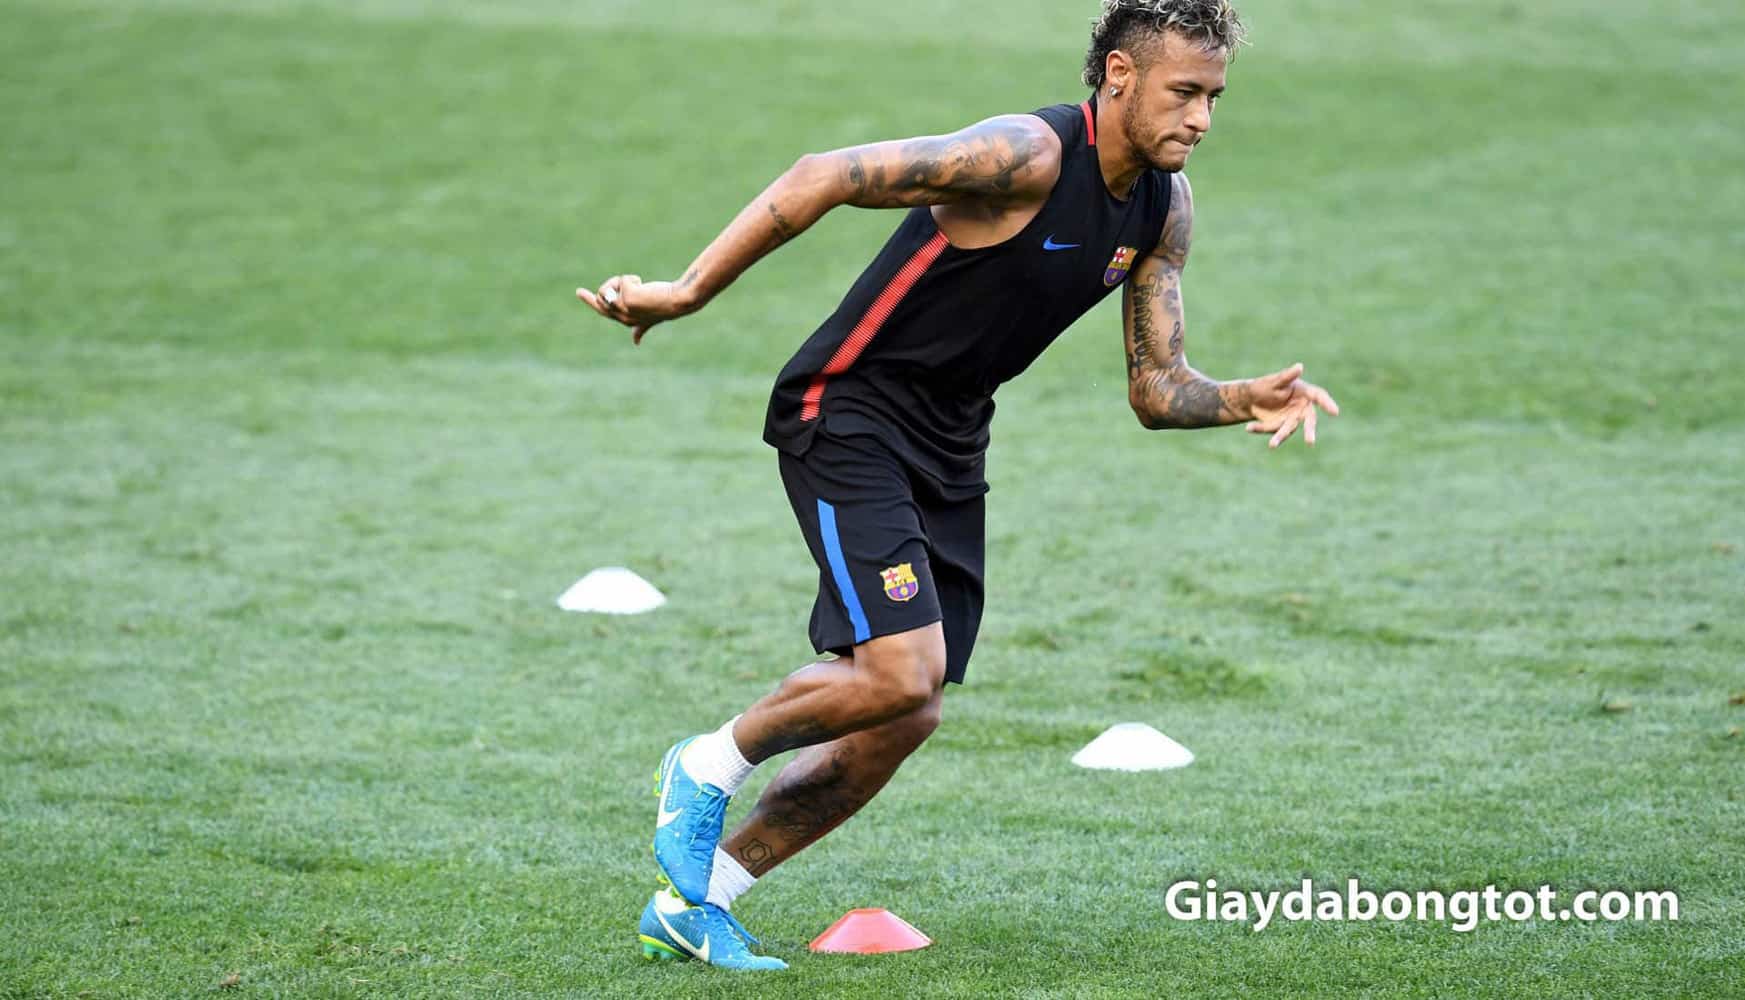 Cac mau giay da bong Nike dep nhat cua Neymar (5)